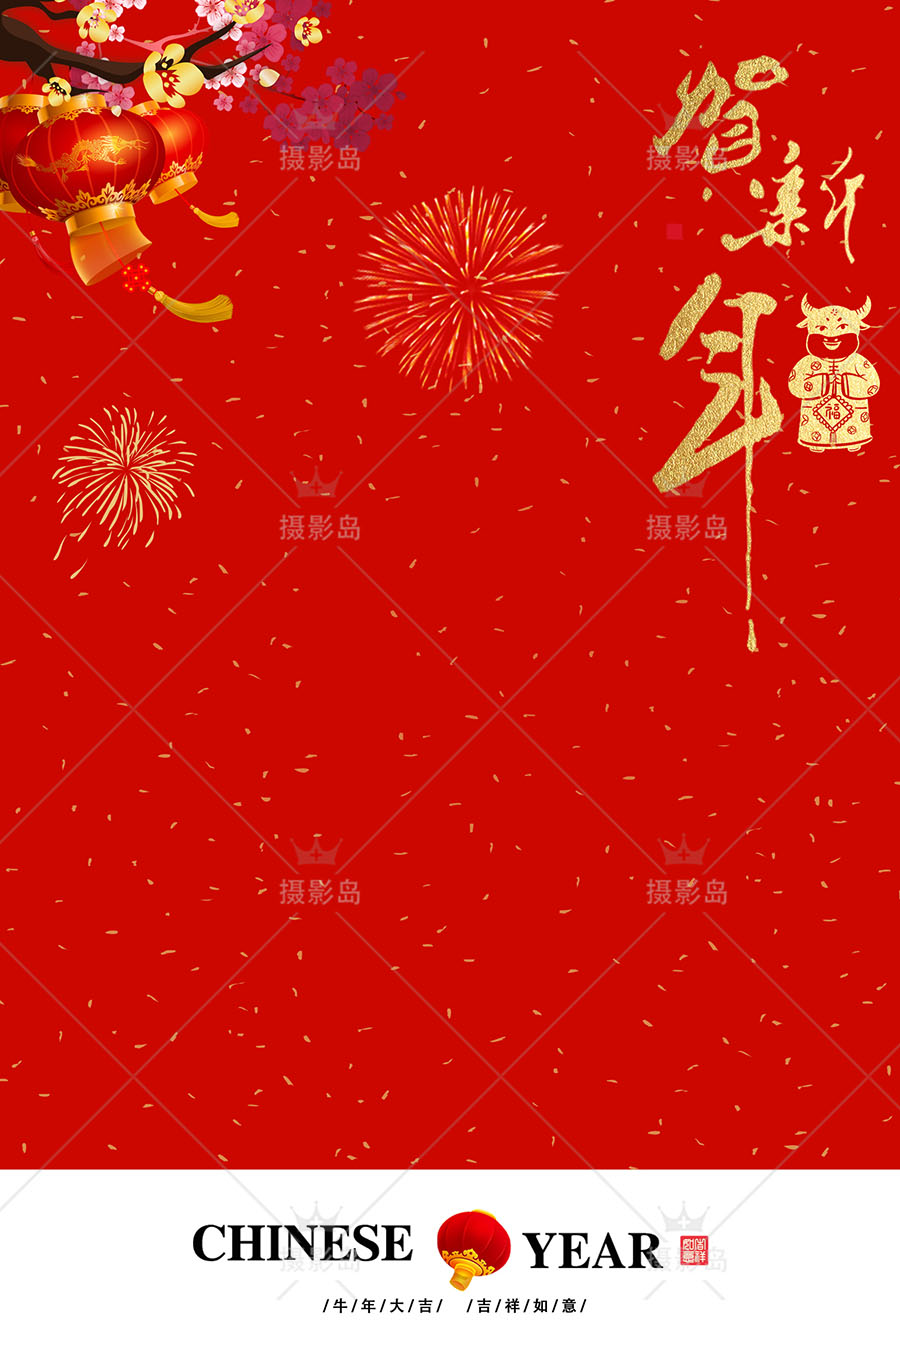 新年牛年喜庆大红色全家福亲子儿童摄影写真PSD背景模板素材